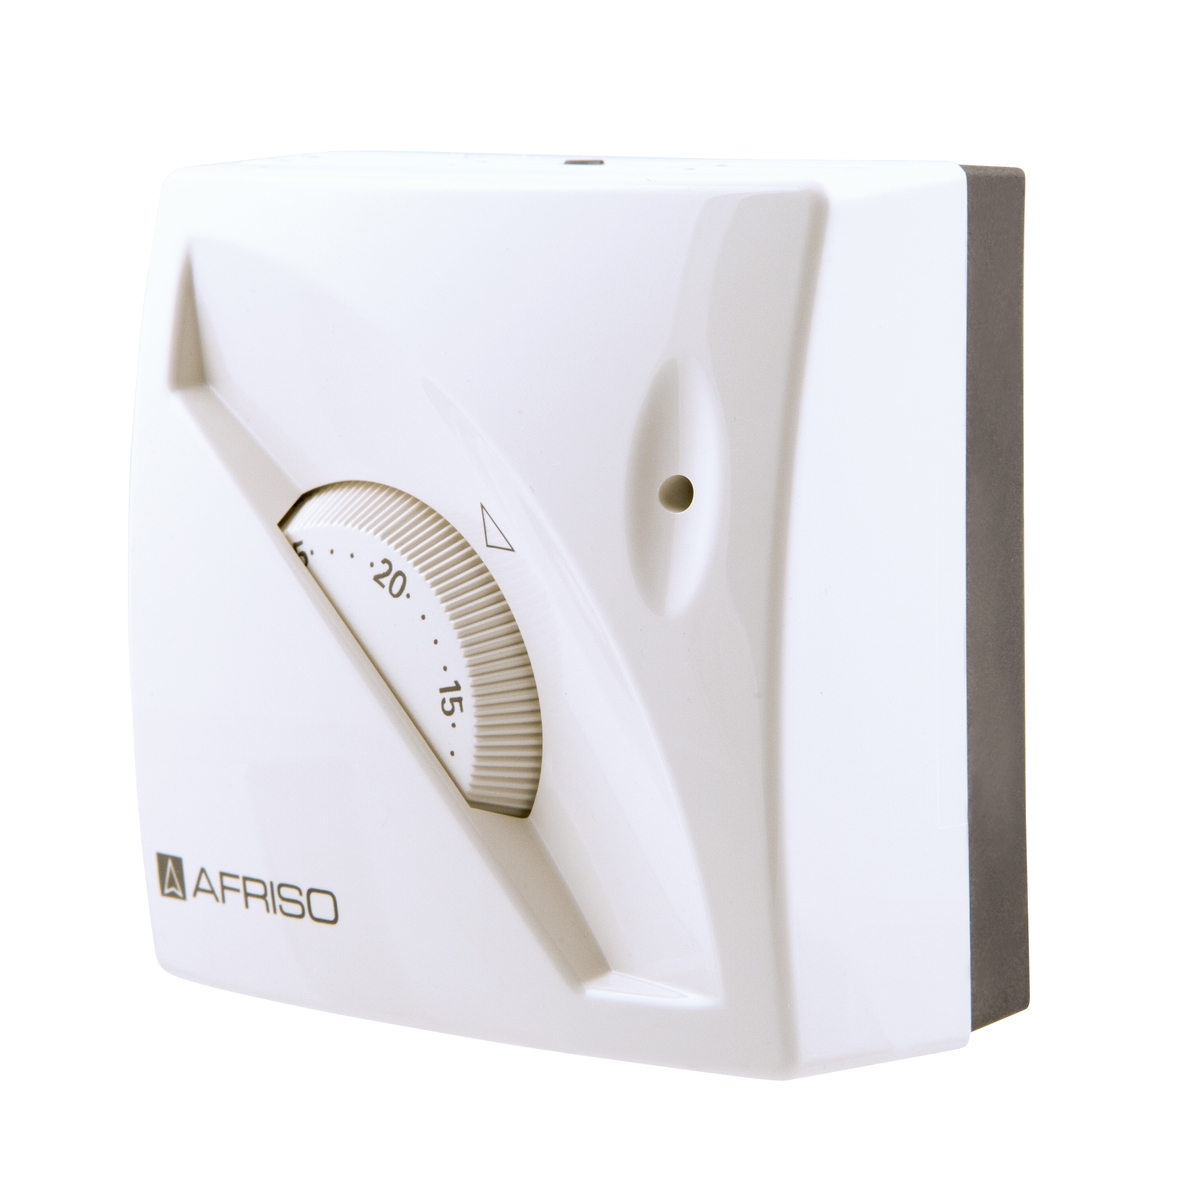 Pokojový termostat TA 03 - s LED indikací - AFRISO.CZ